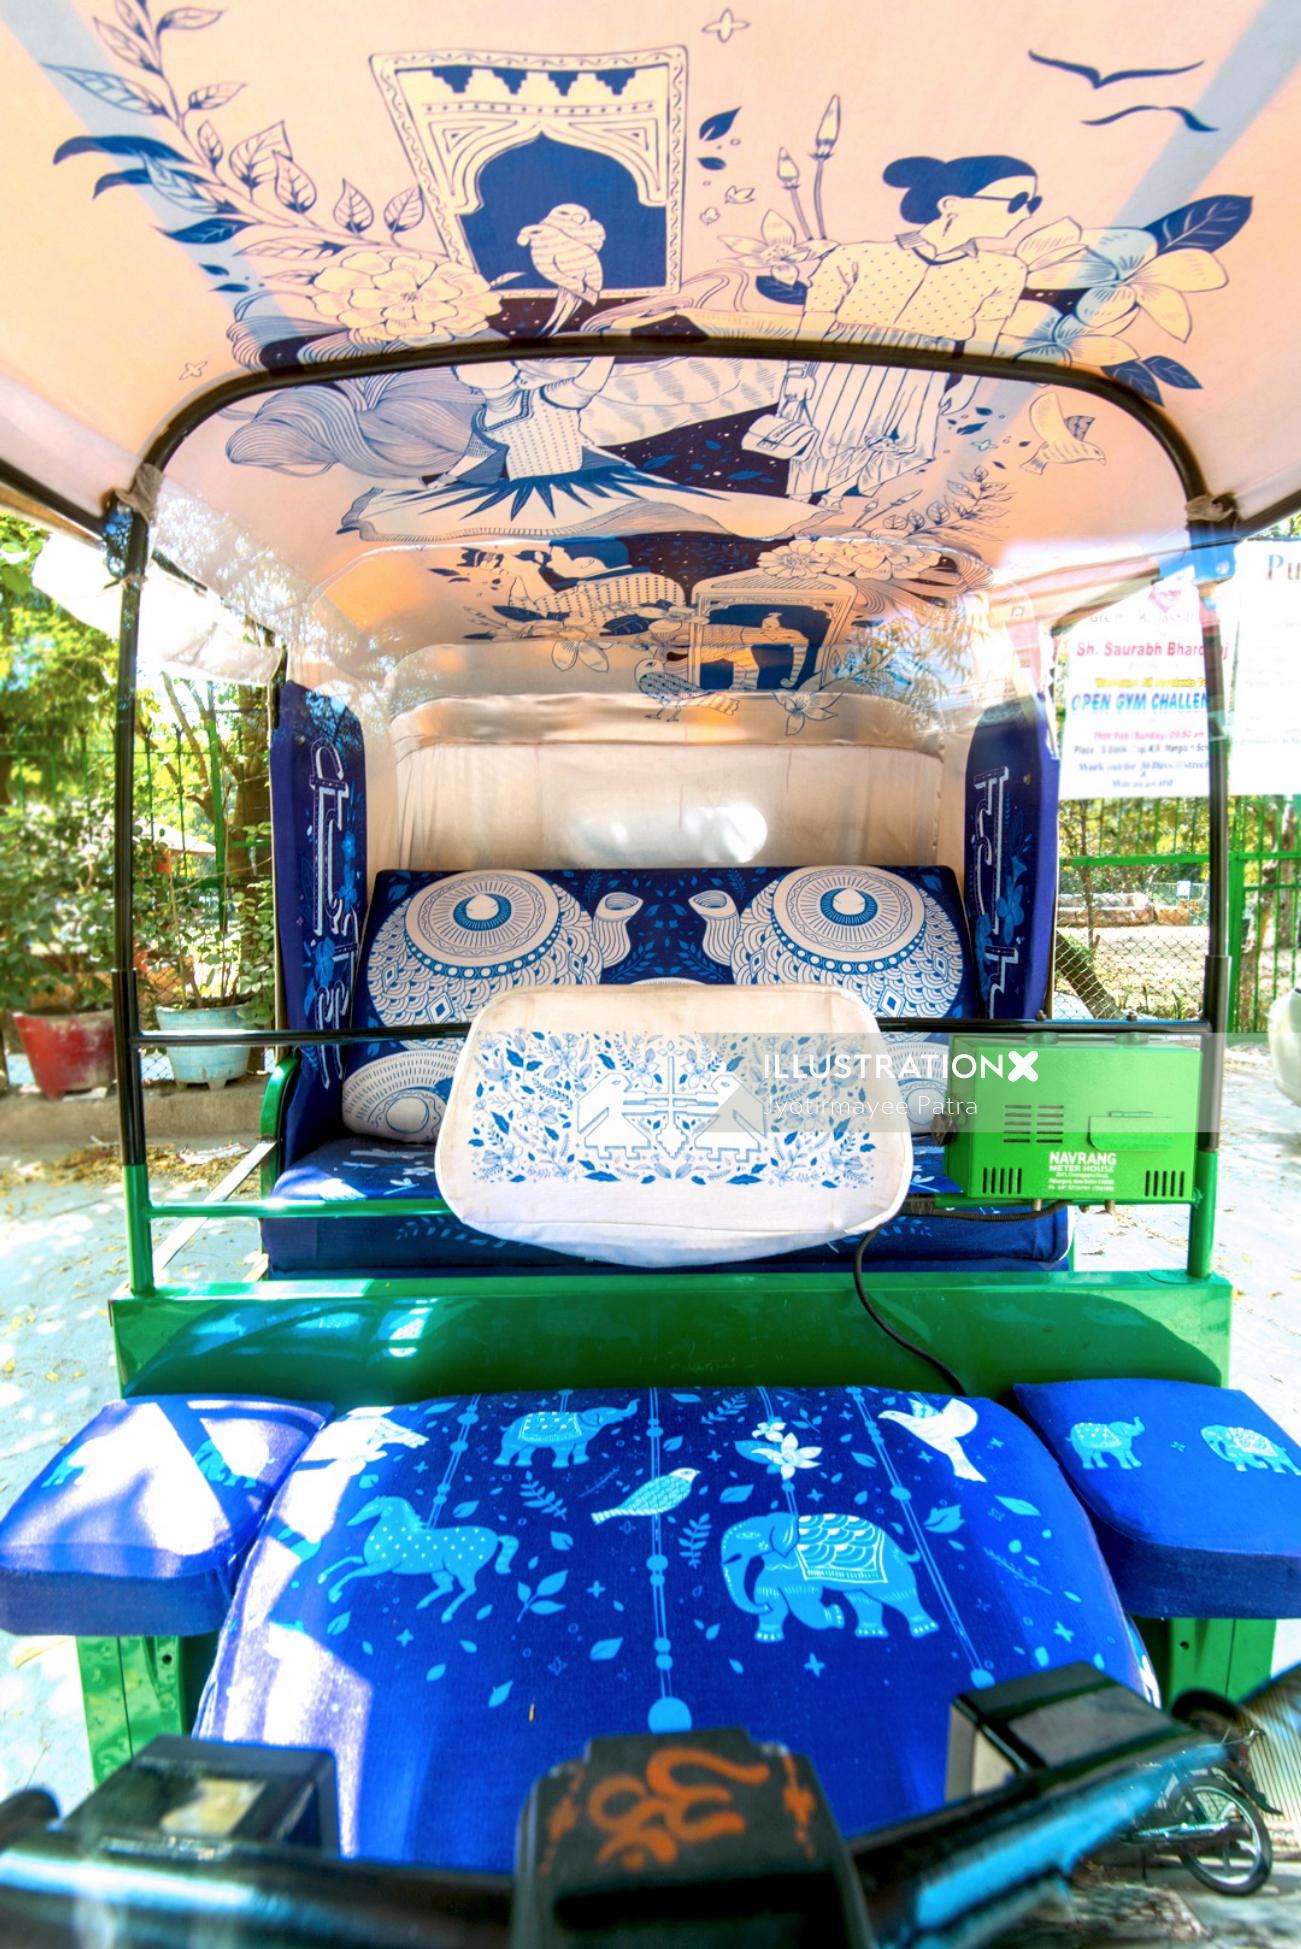 Arte de instalação - Auto Rickshaw